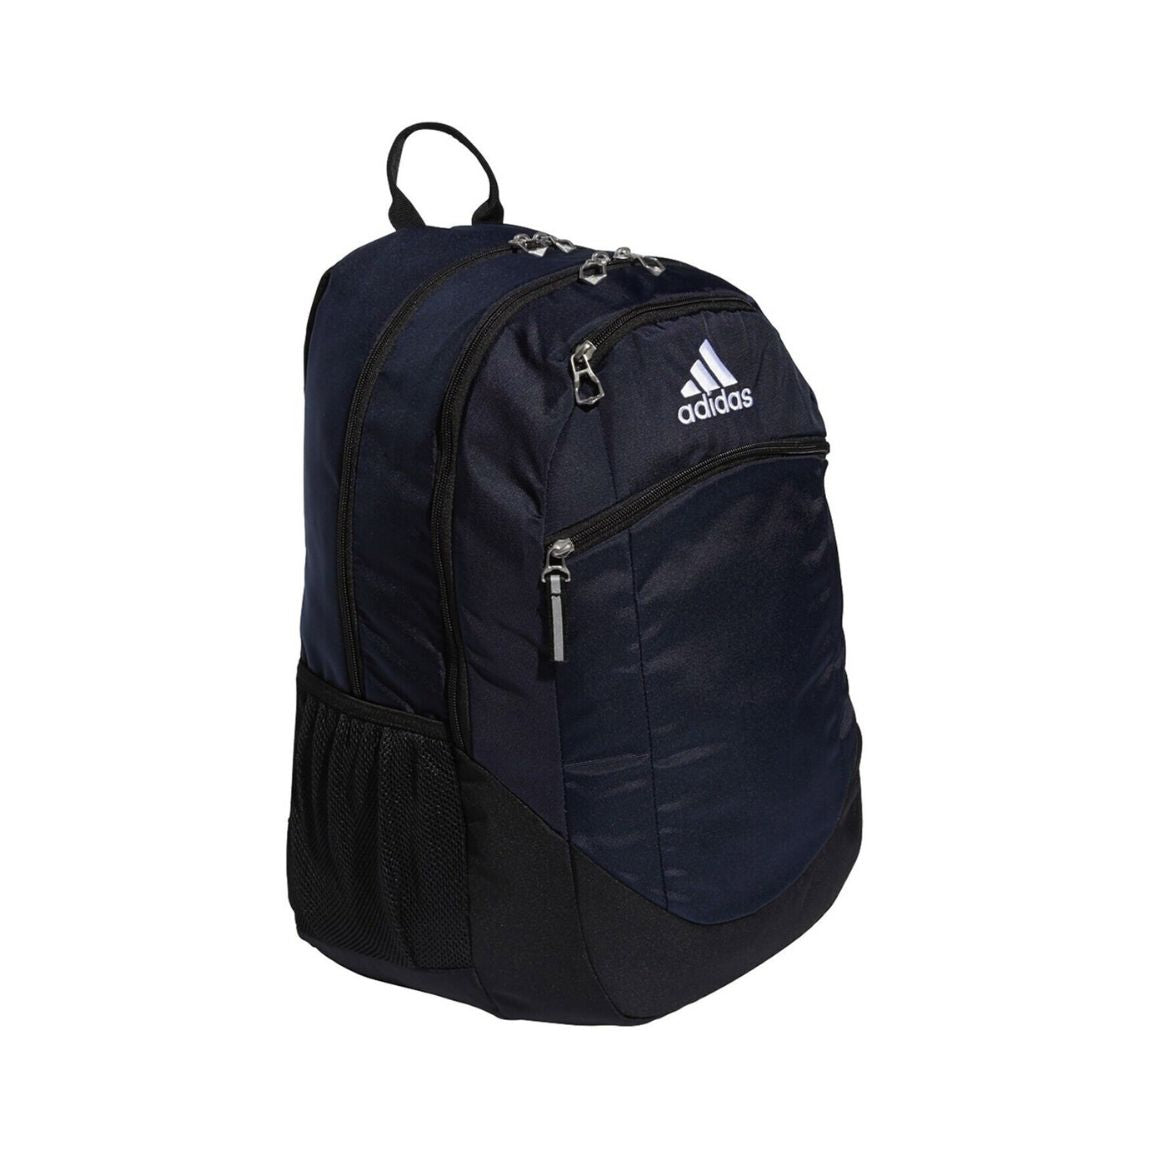 Adidas Striker II Collegiate Team Backpack